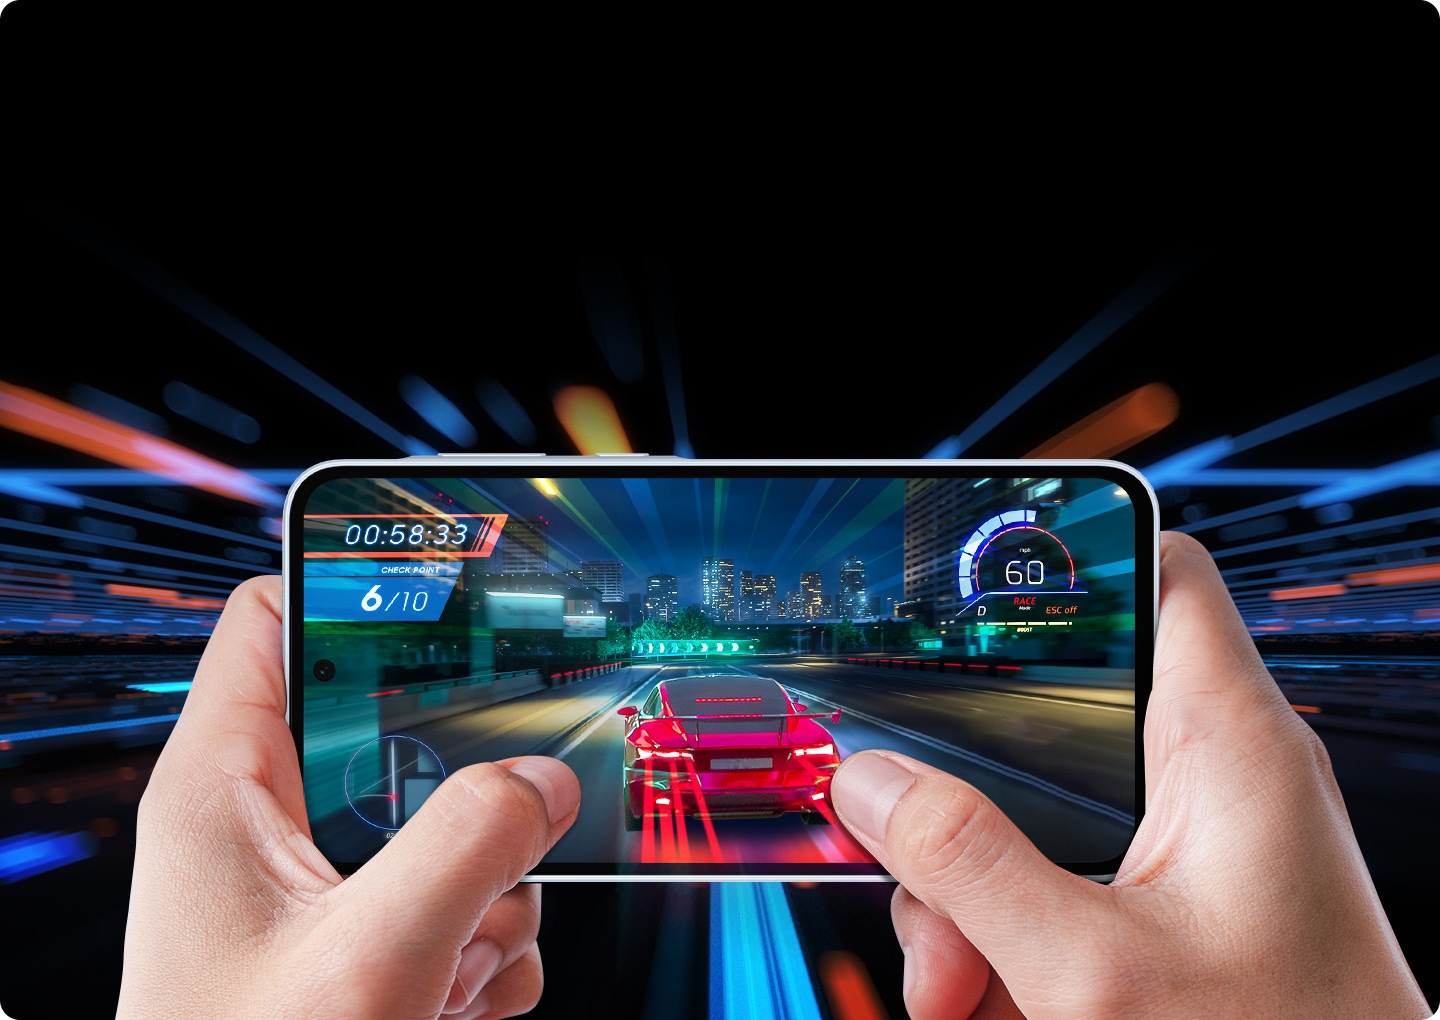 Vista en primera persona de un juego de carreras que se juega en un teléfono inteligente que se sostiene con dos manos. El juego muestra un auto deportivo rojo que acelera en una autopista de la ciudad por la noche.